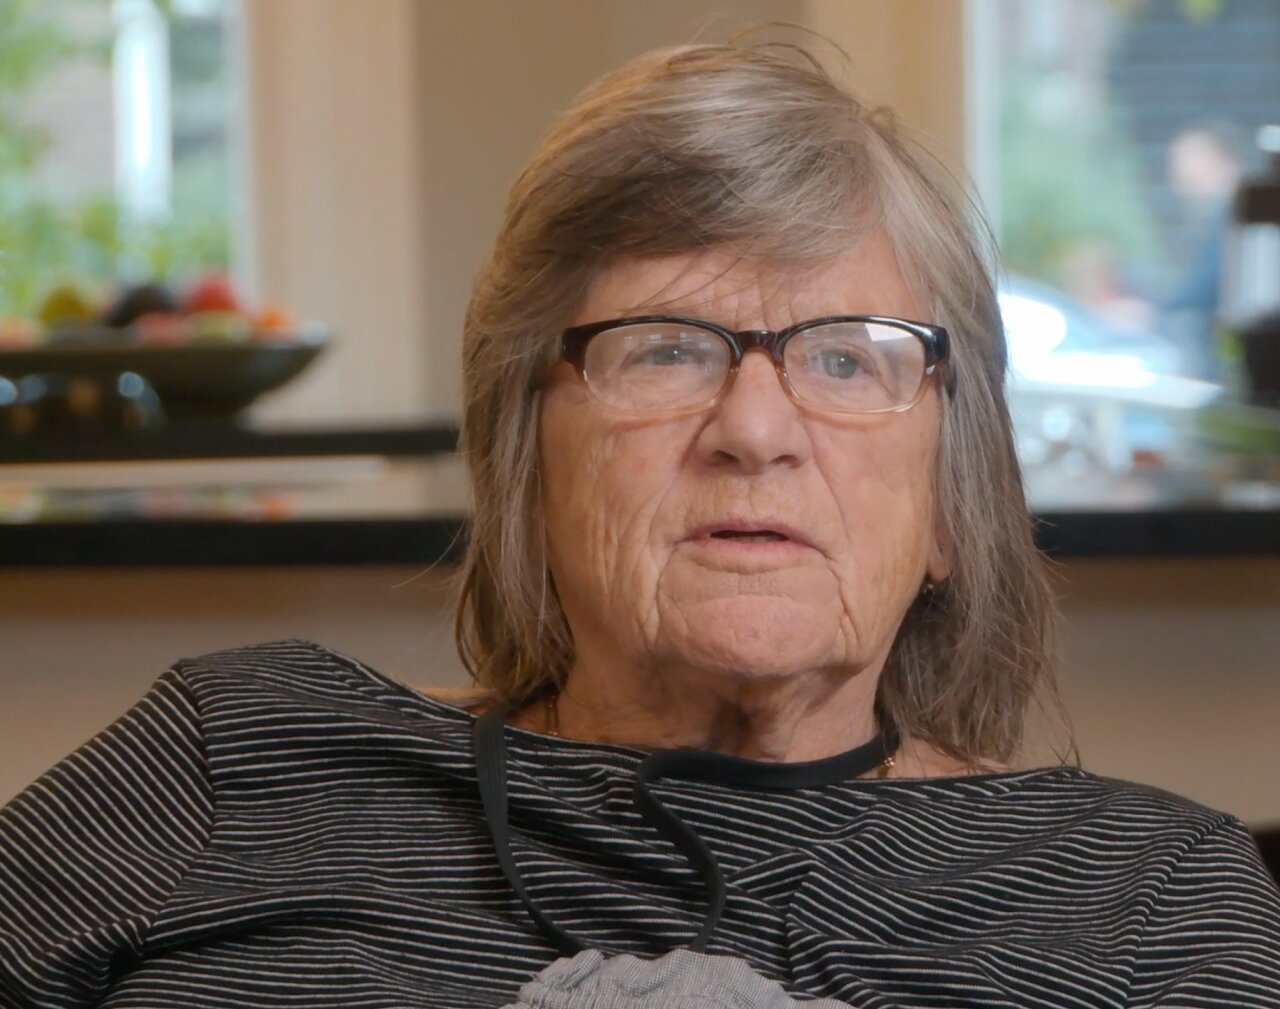 Mart vertelt over haar ervaring met dementie.